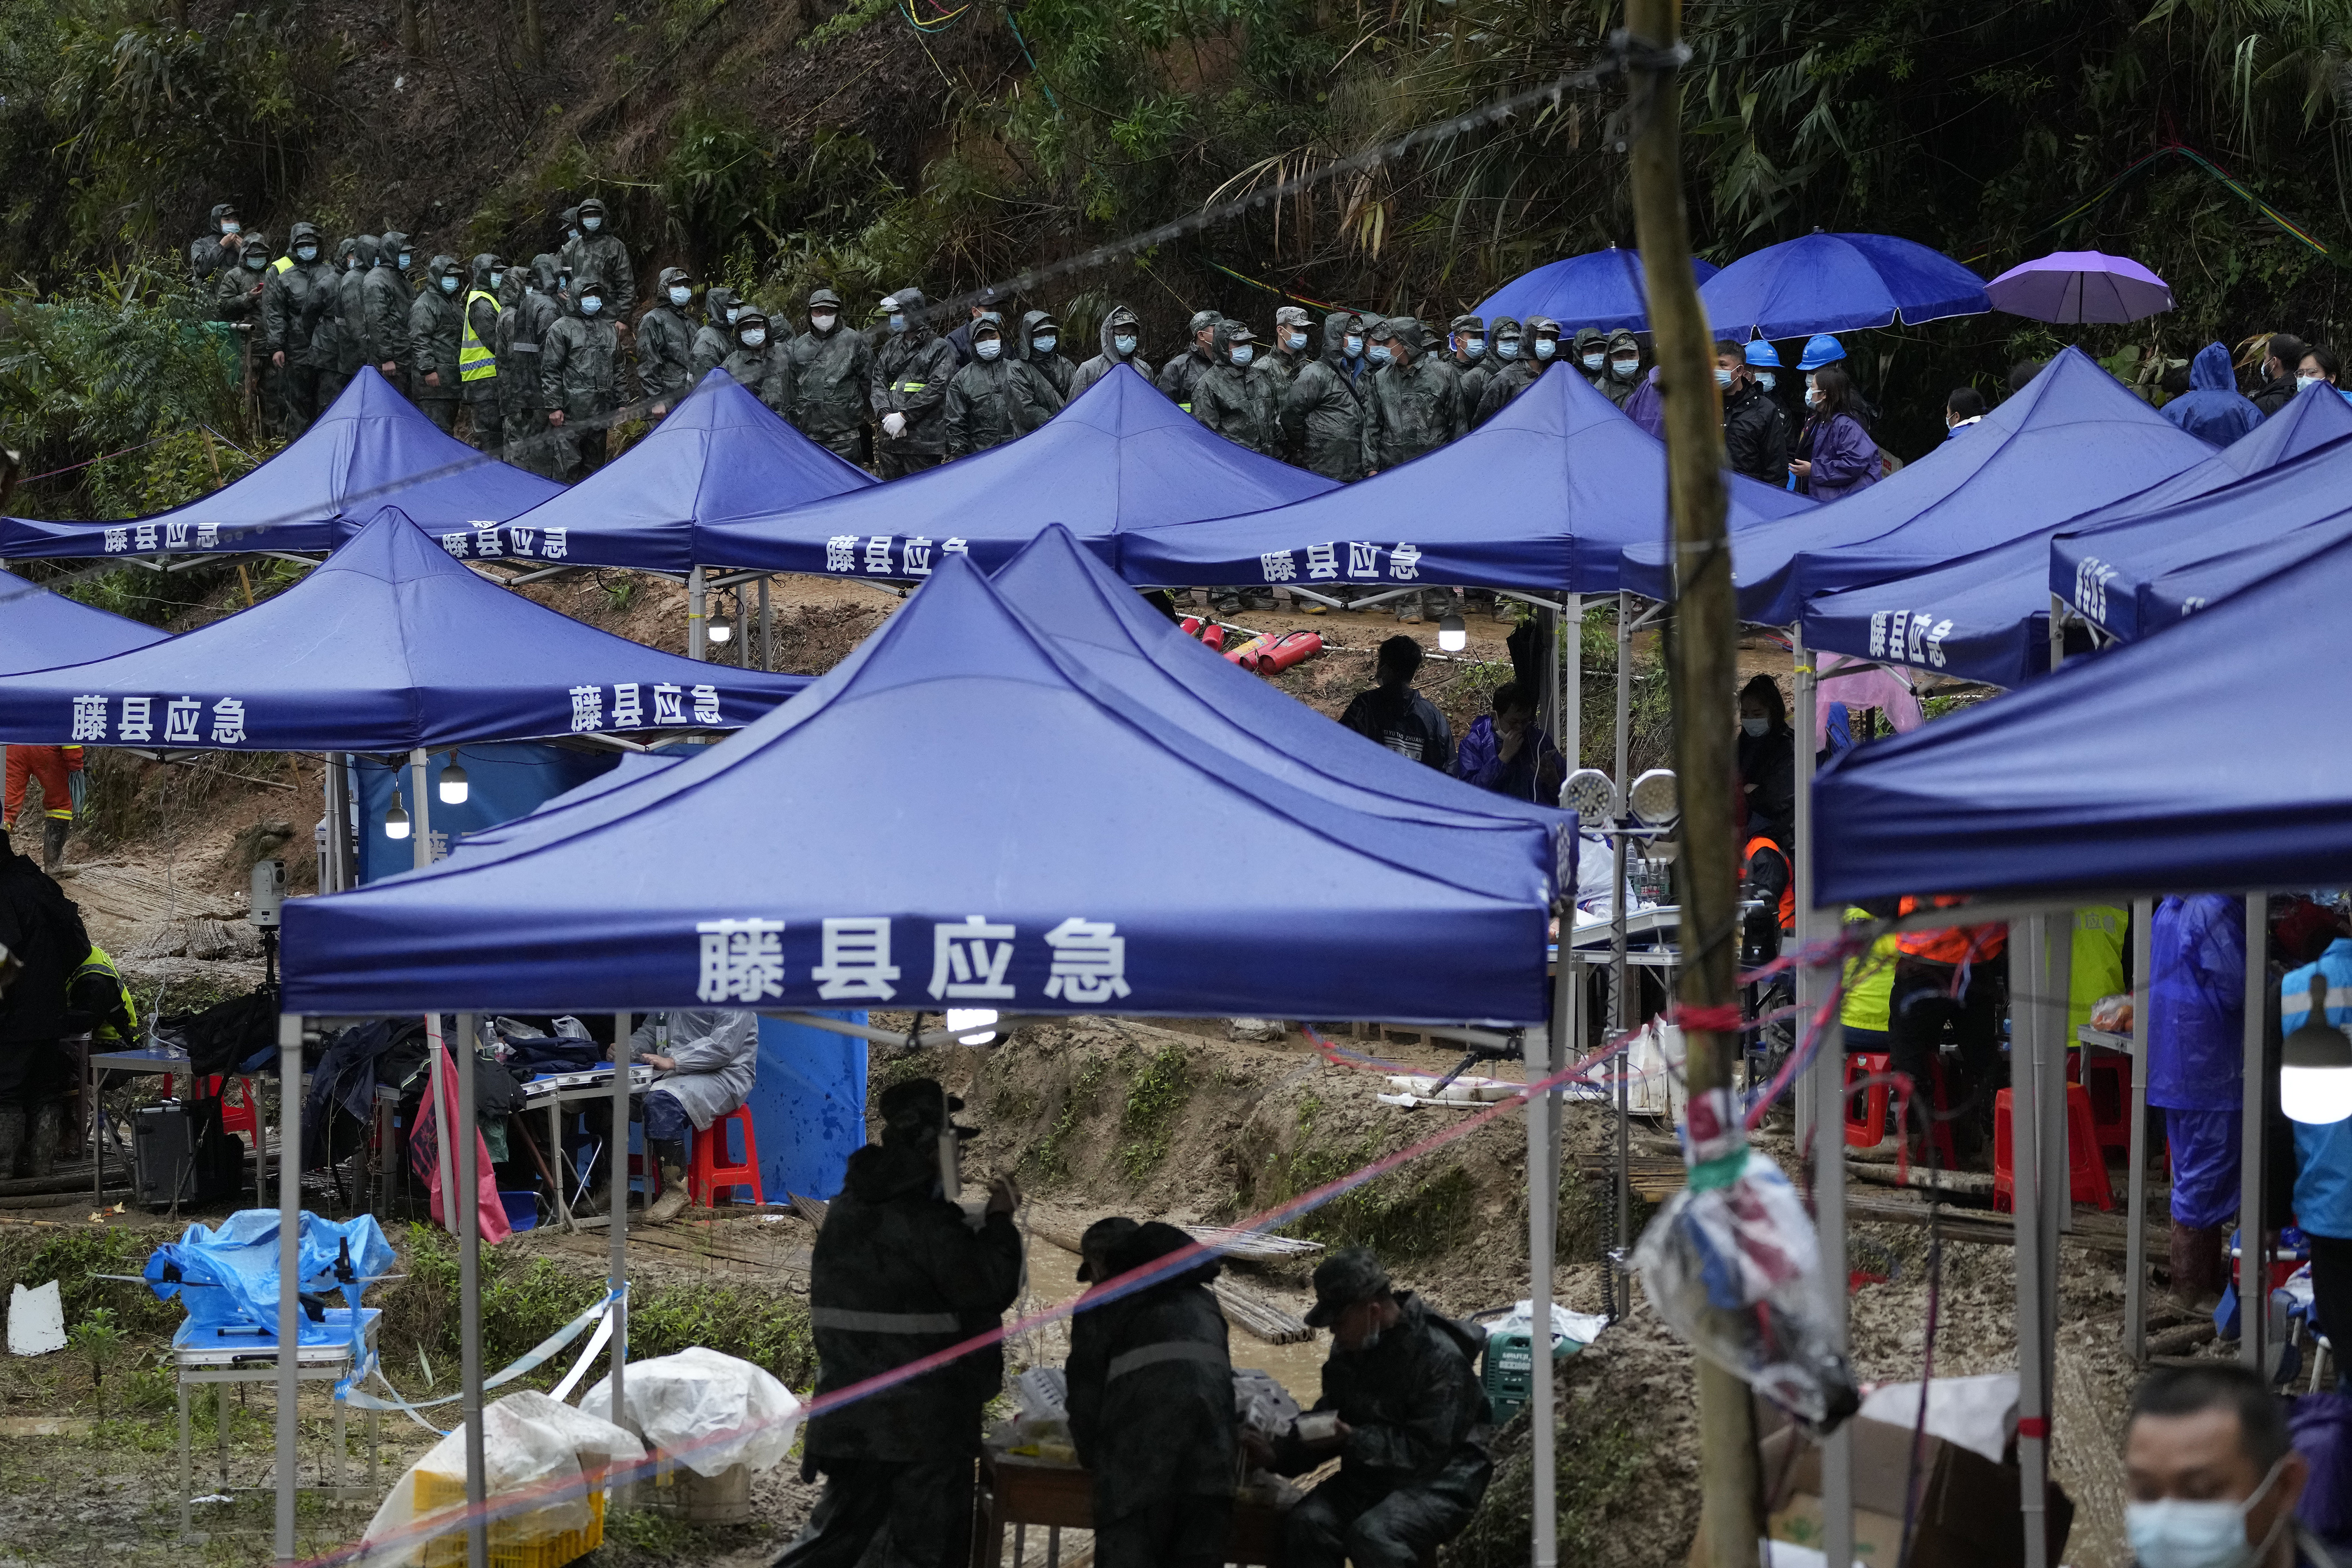 En el sitio participaron más de 300 buscadores. (AP foto/Ng Han Guan)